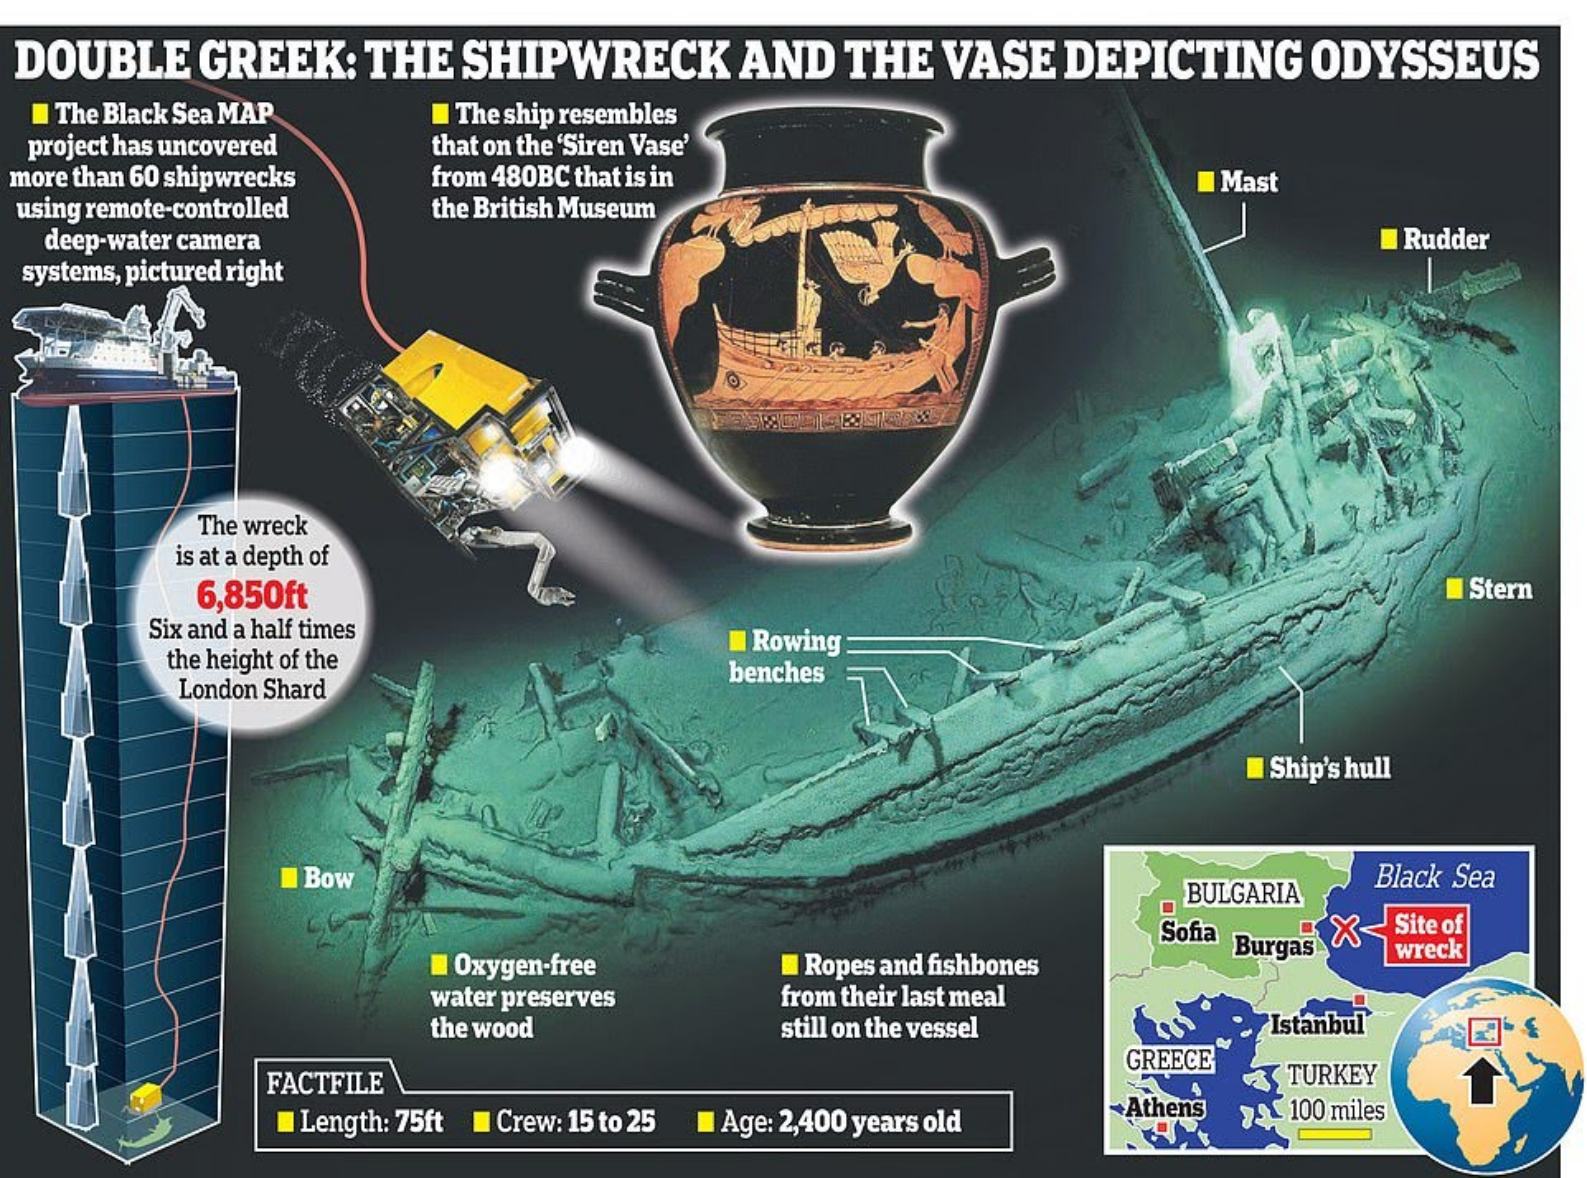 Avastuse tegi Musta mere merearheoloogia projekti (MAP) teadlaste meeskond, kes on selles piirkonnas uuringuid korraldanud viimased kolm aastat. Meeskond kasutas merepõhja uurimiseks täiustatud veealust robottehnoloogiat ja avastas laevavraki üle 1.3 miili maapinnast.